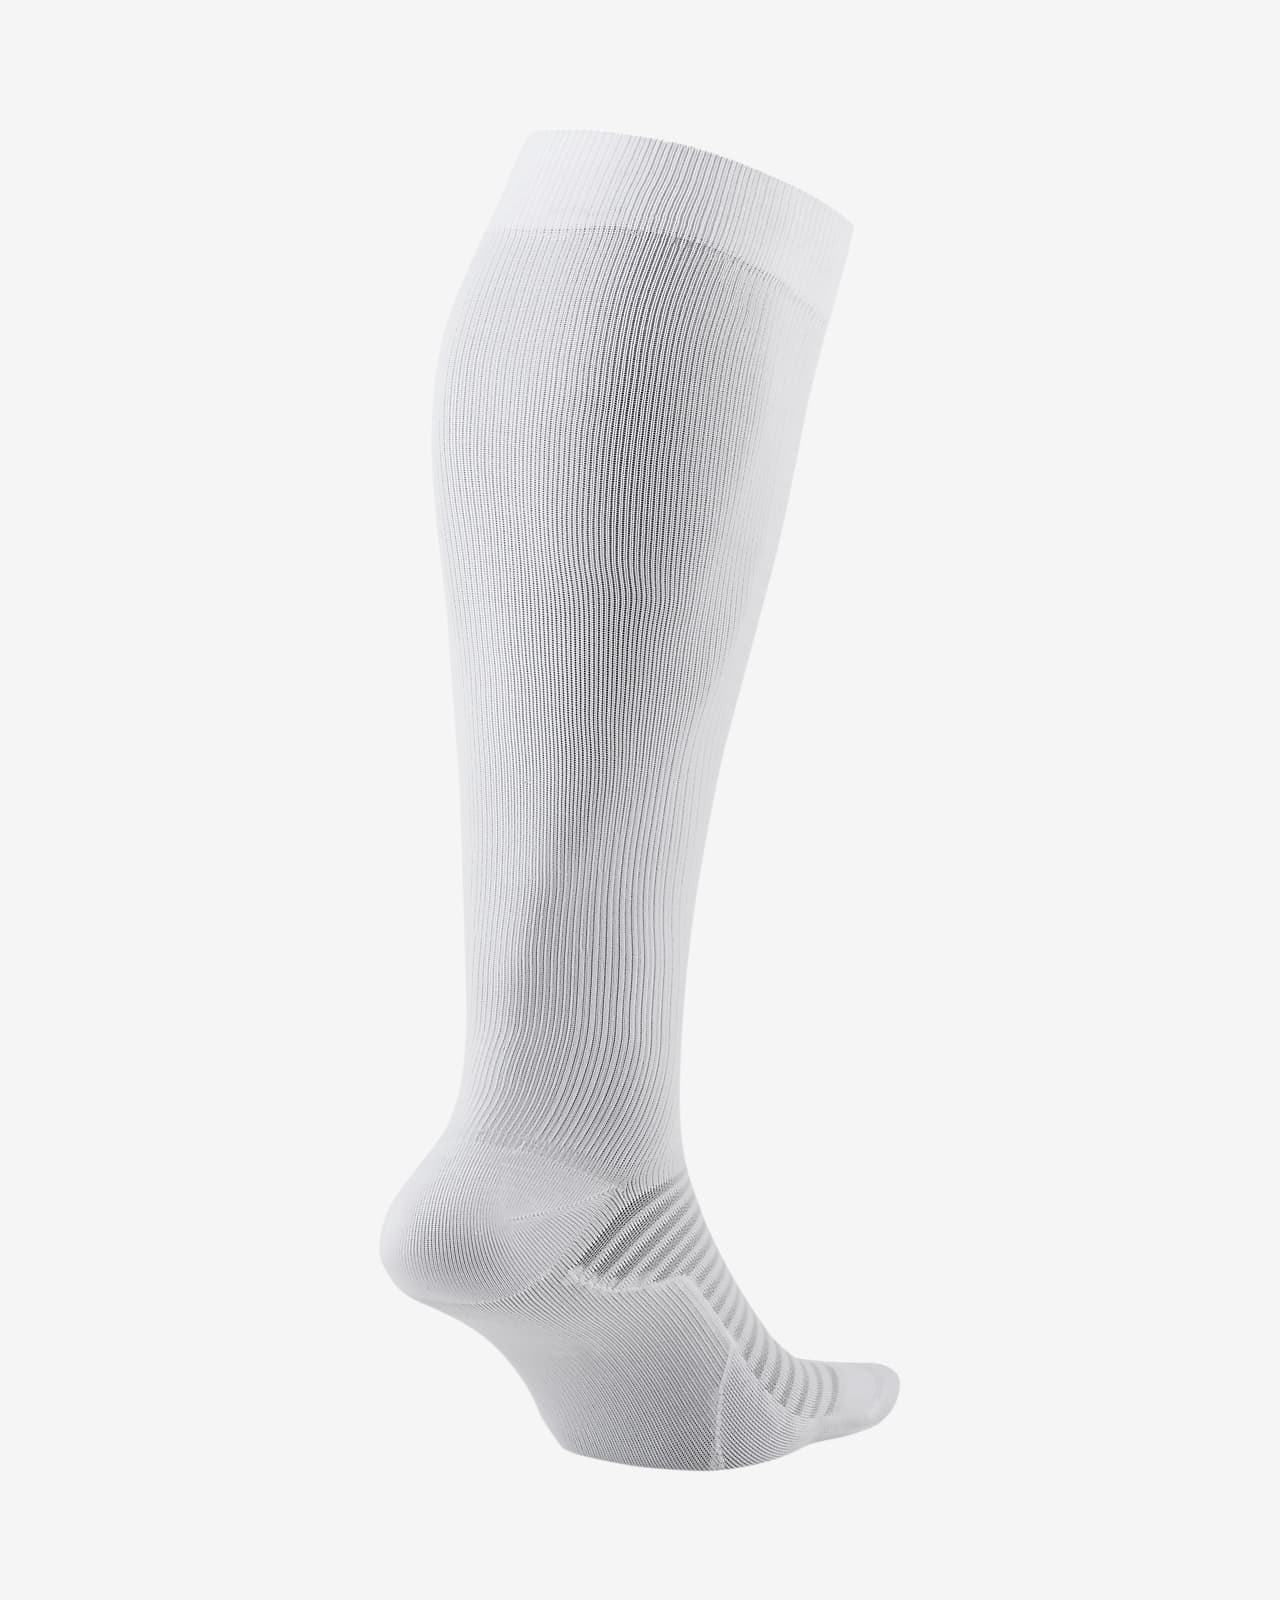 white nike running socks